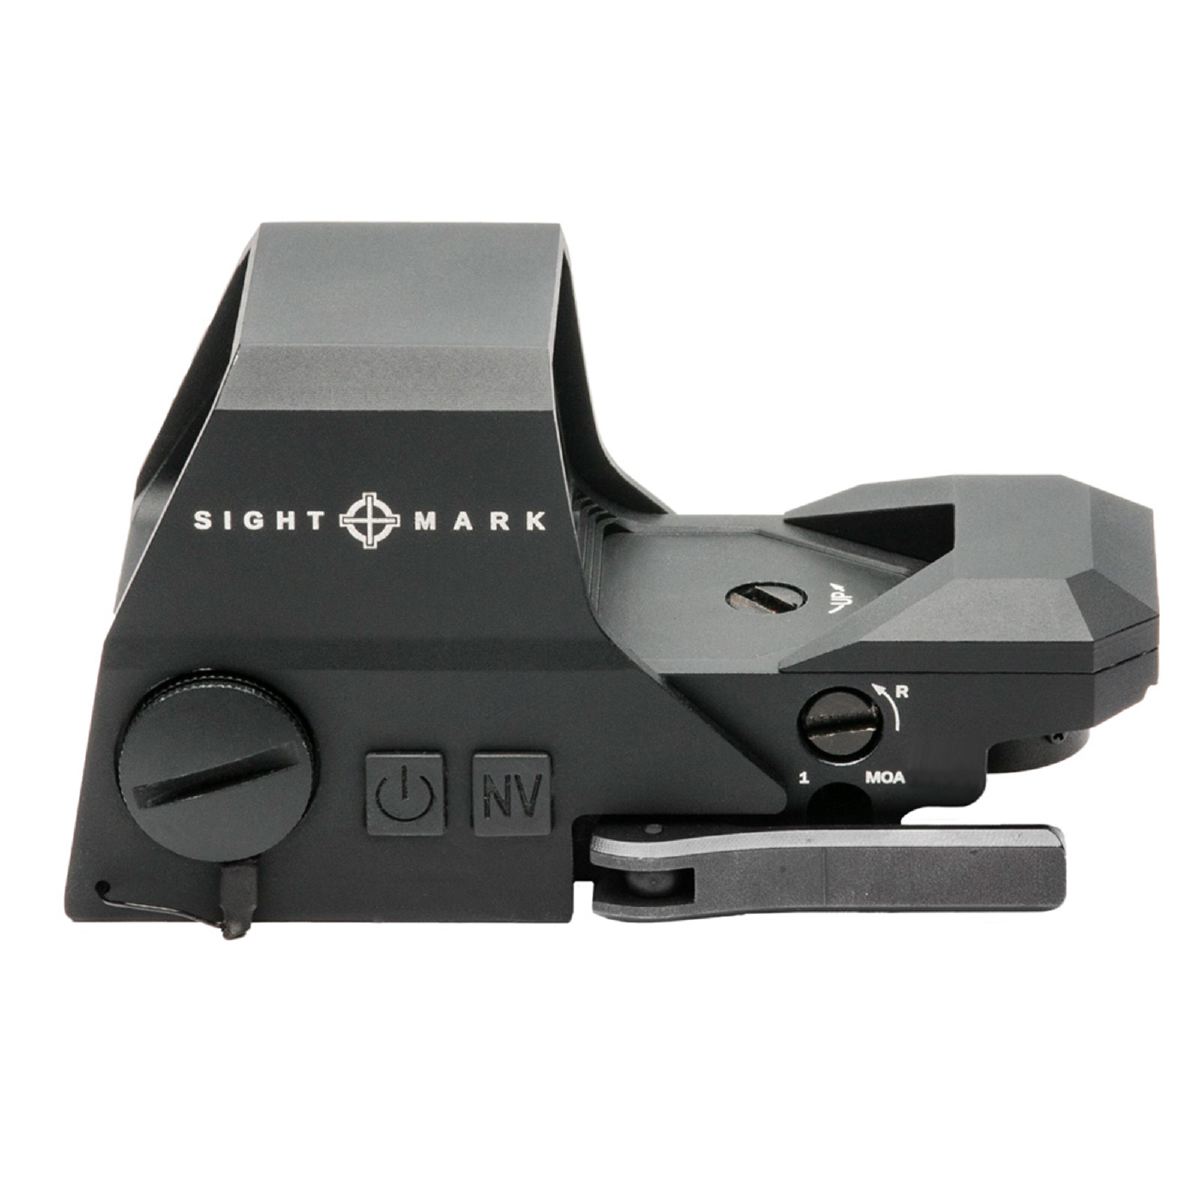 SightMark Rotpunktvisier Ultra Shot R-Spec  16 Helligkeitseinstellungen  Parallaxekorrektur  lange Batterielaufzeit